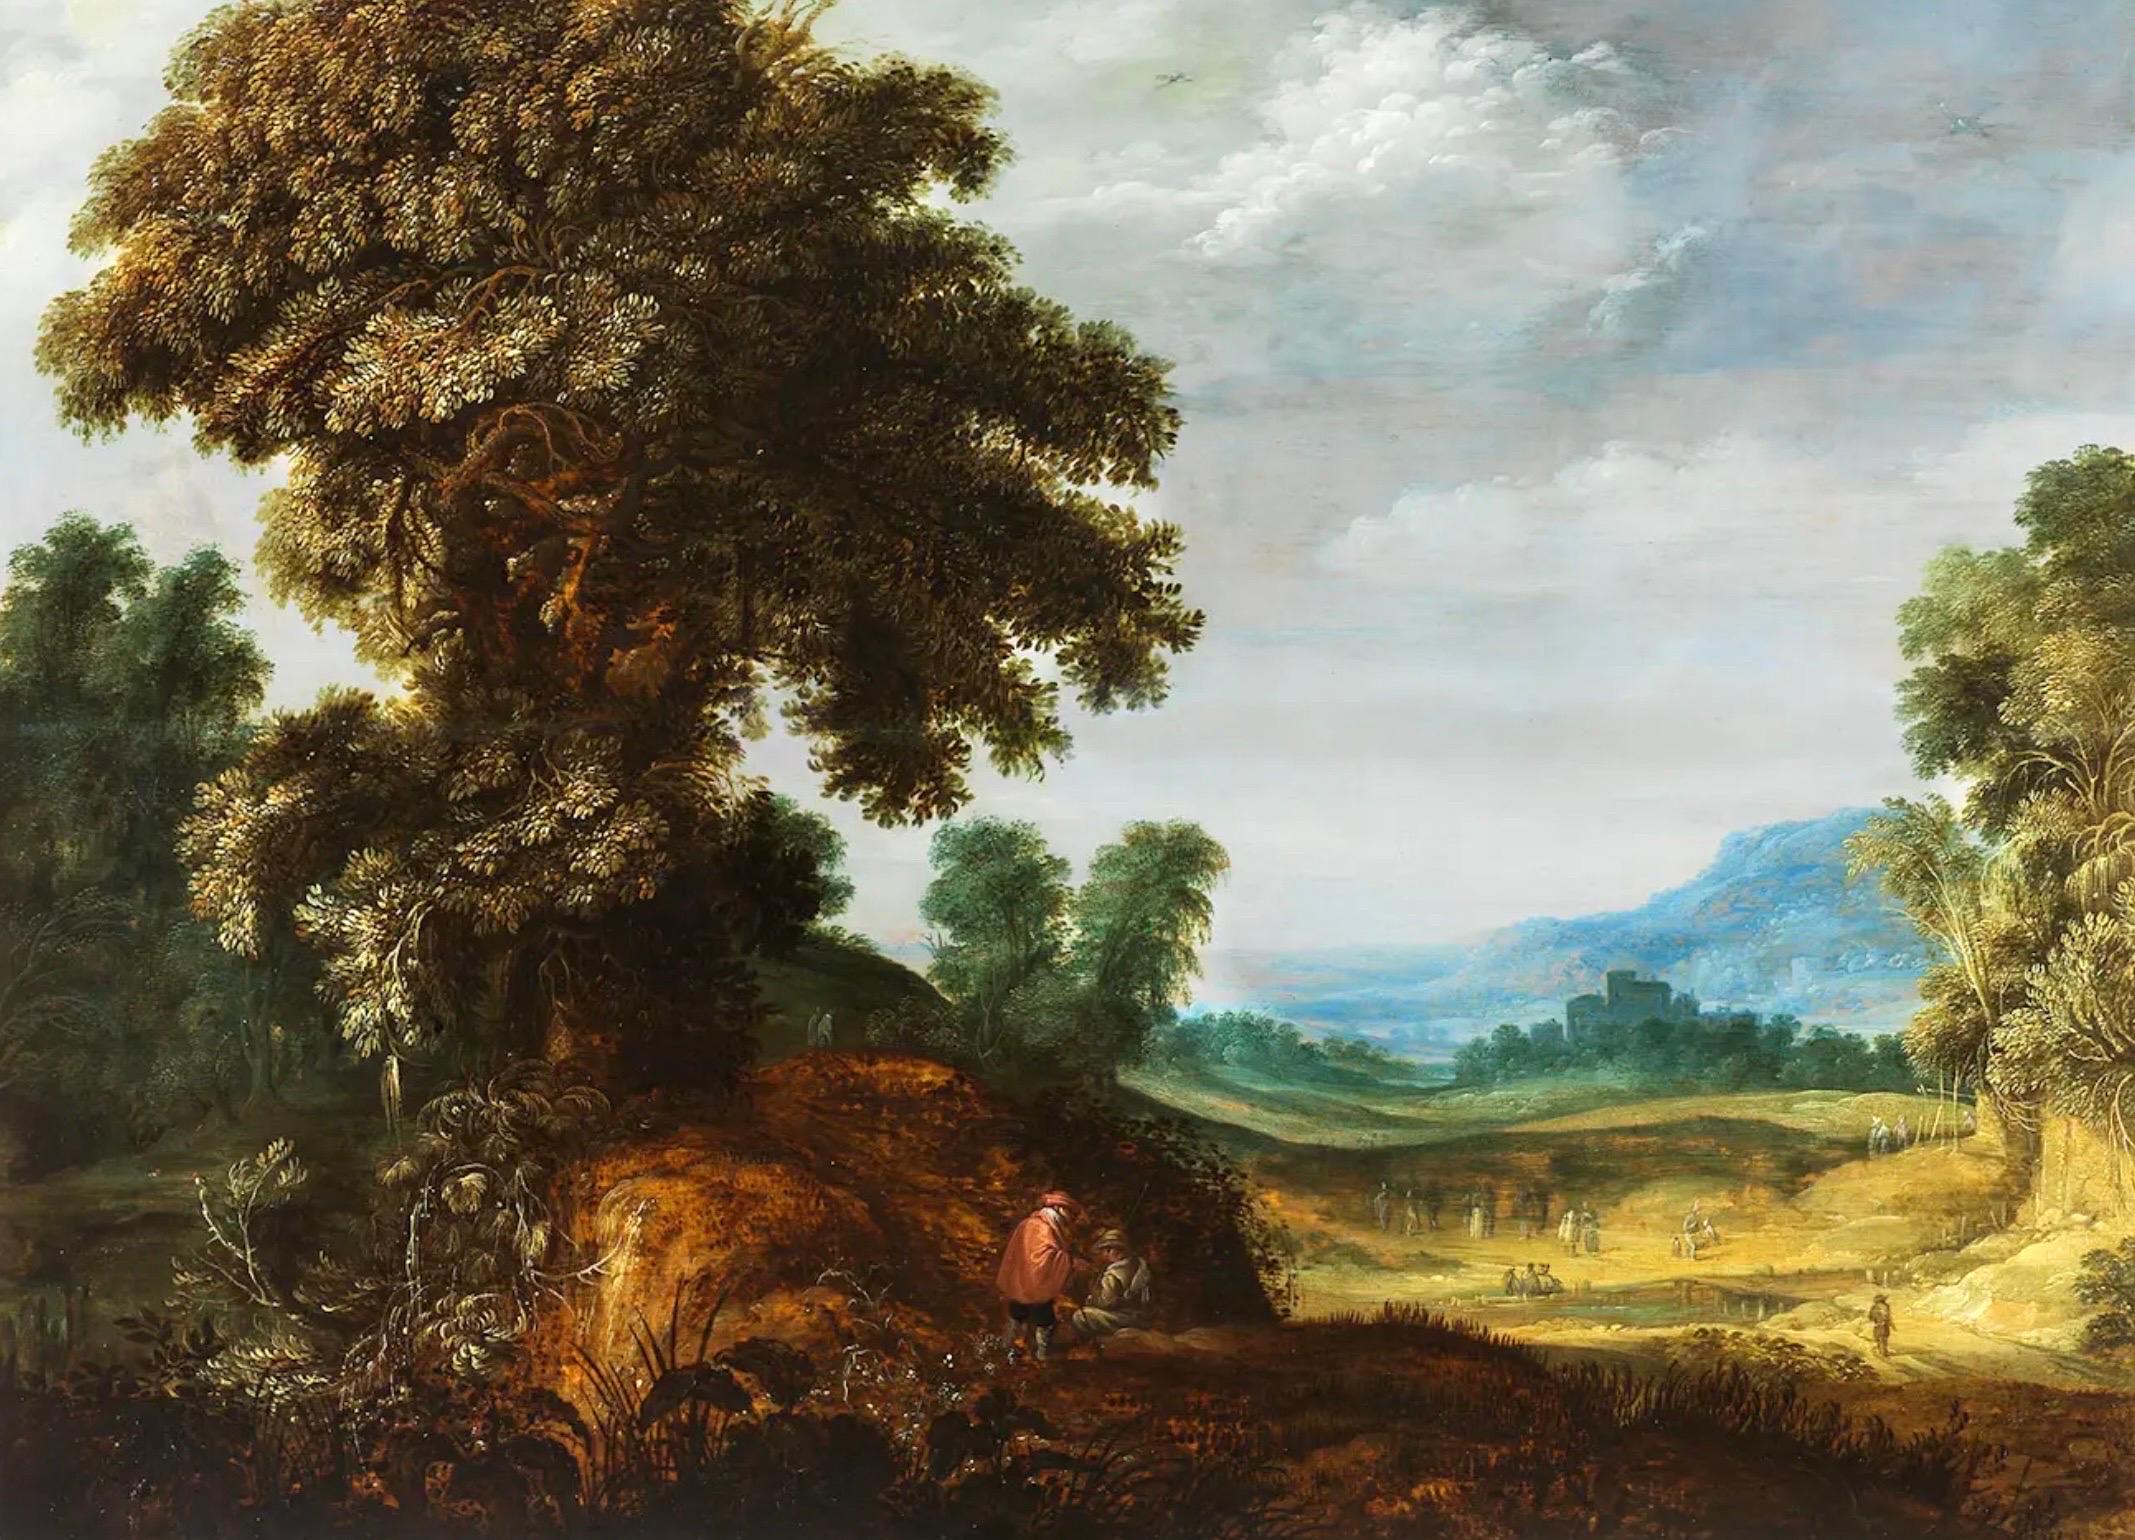 Alexander Keirincx Figurative Painting – Flämisches Gemälde eines alten Meisters aus dem 17. Jahrhundert - Weite Landschaft mit einer majestätischen Eiche